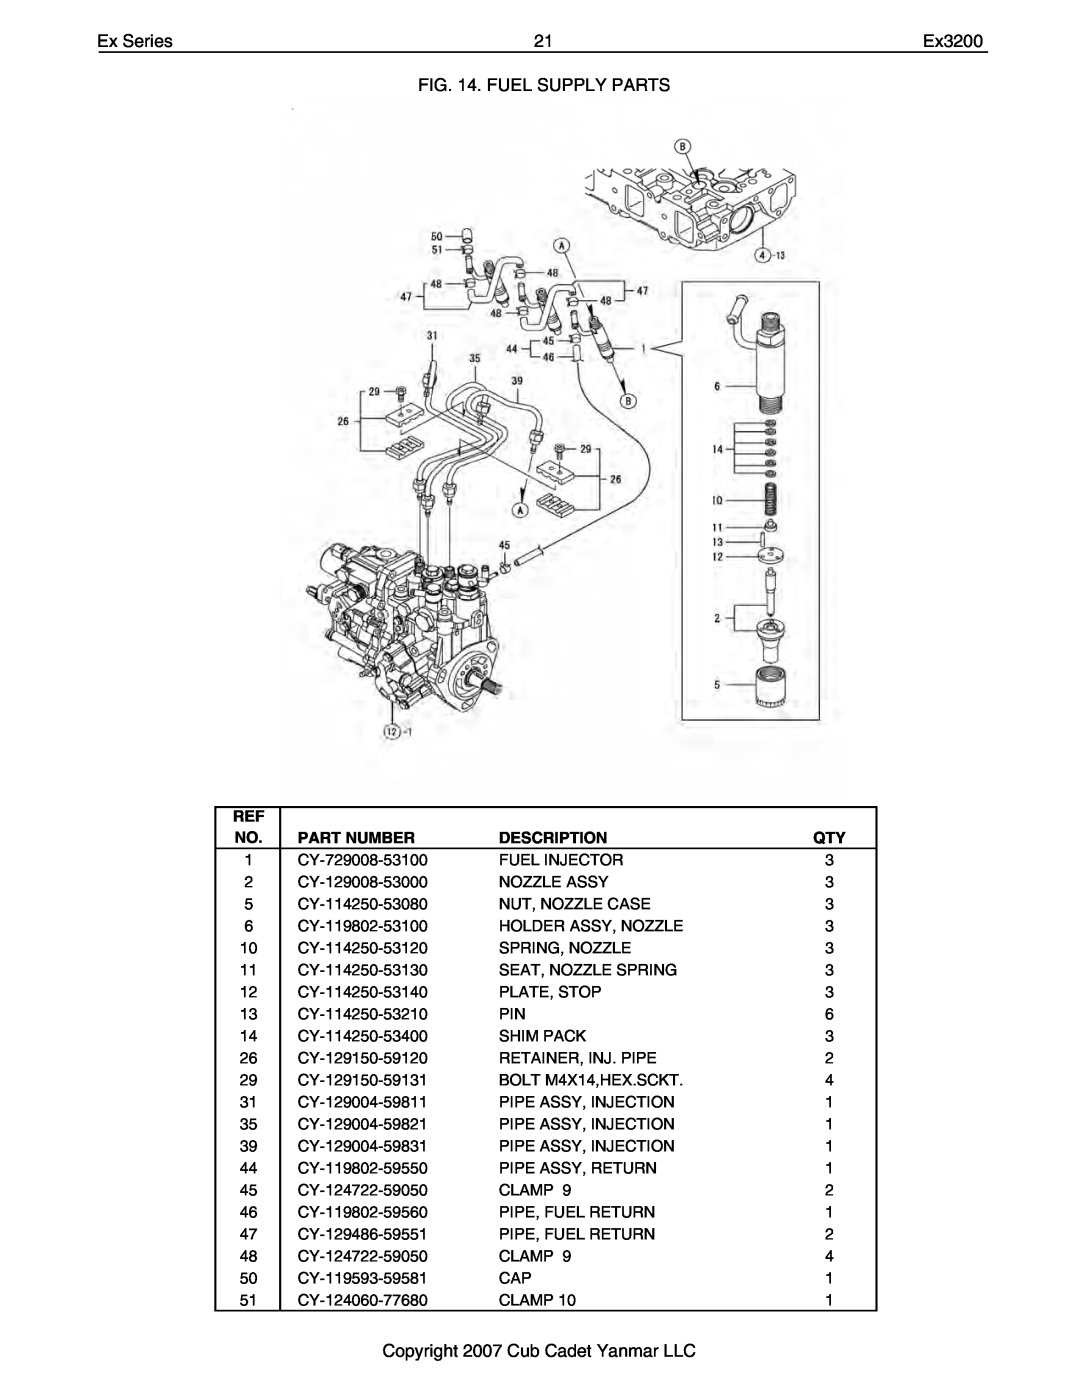 Cub Cadet Ex32002 manual Ex Series, Fuel Supply Parts, Copyright 2007 Cub Cadet Yanmar LLC, Part Number, Description 